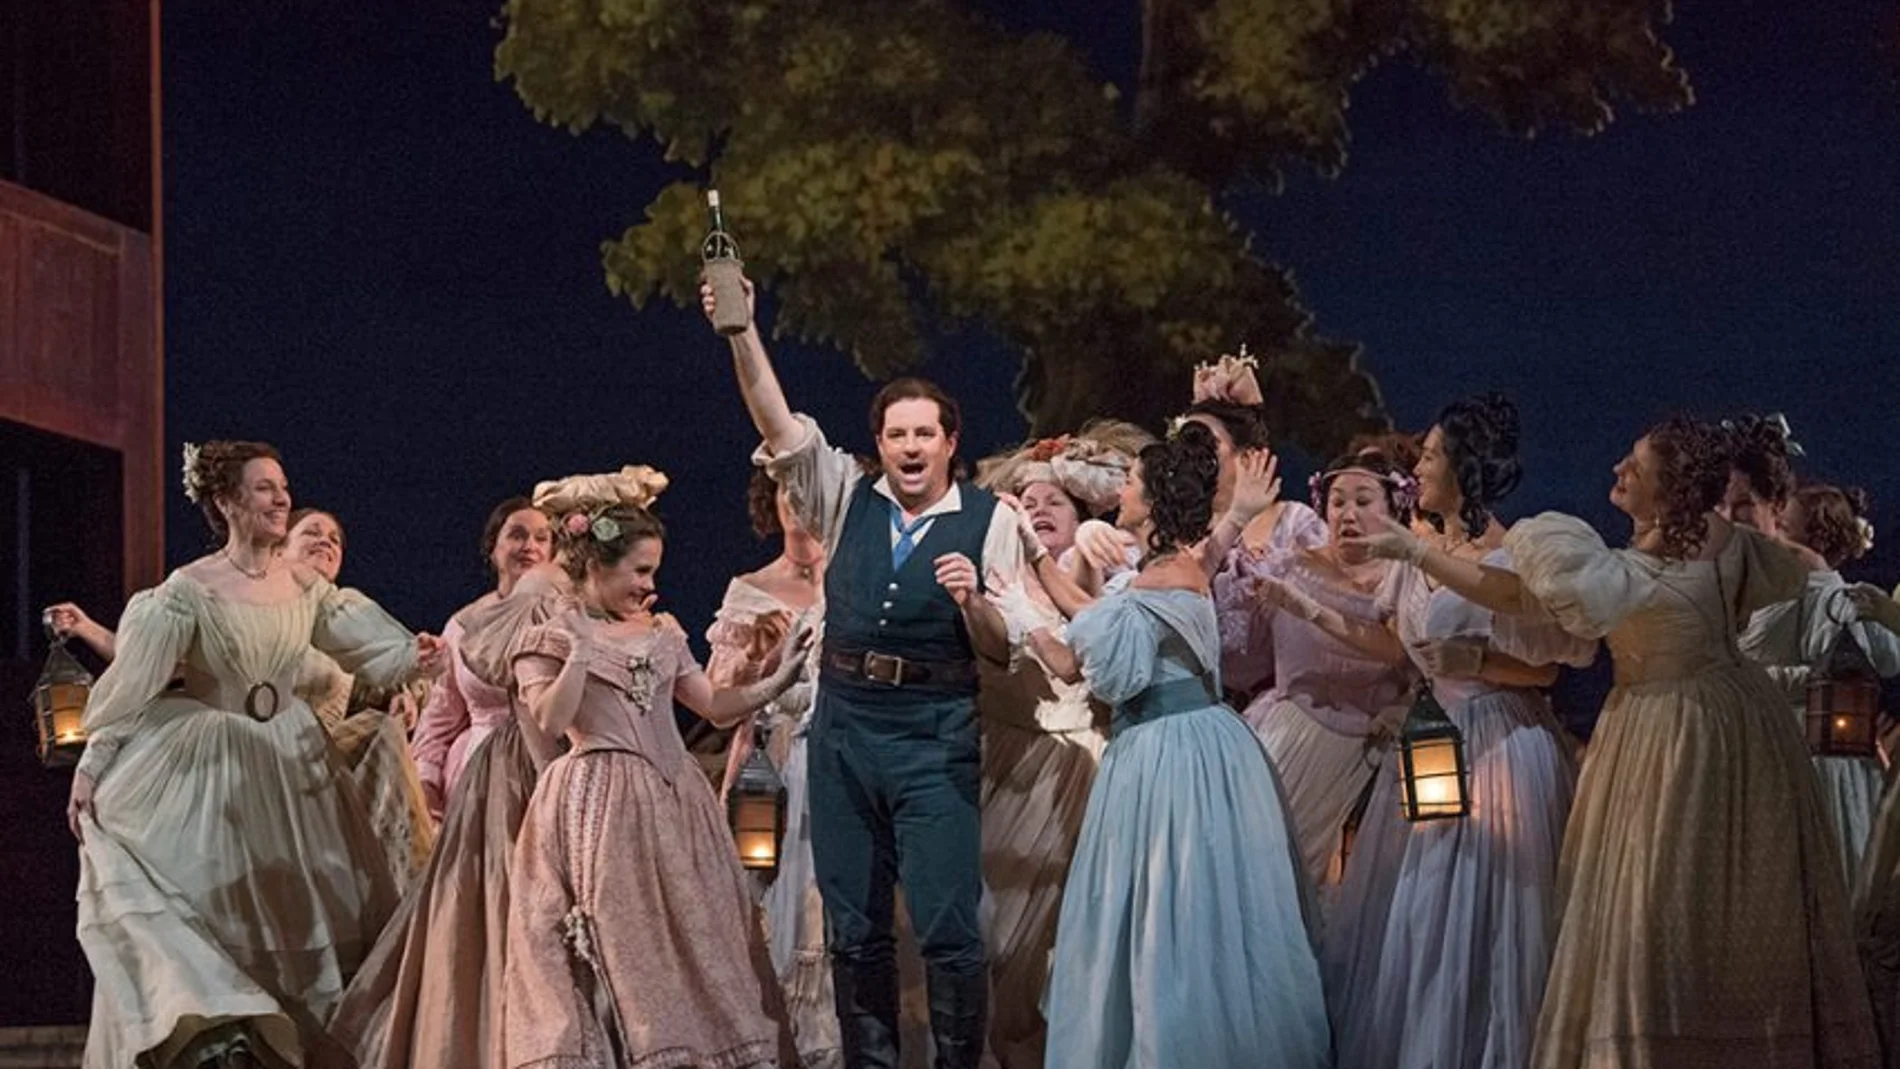 "El elixir de amor" es una de las óperas más frecuentemente interpretadas de todas las de Donizetti